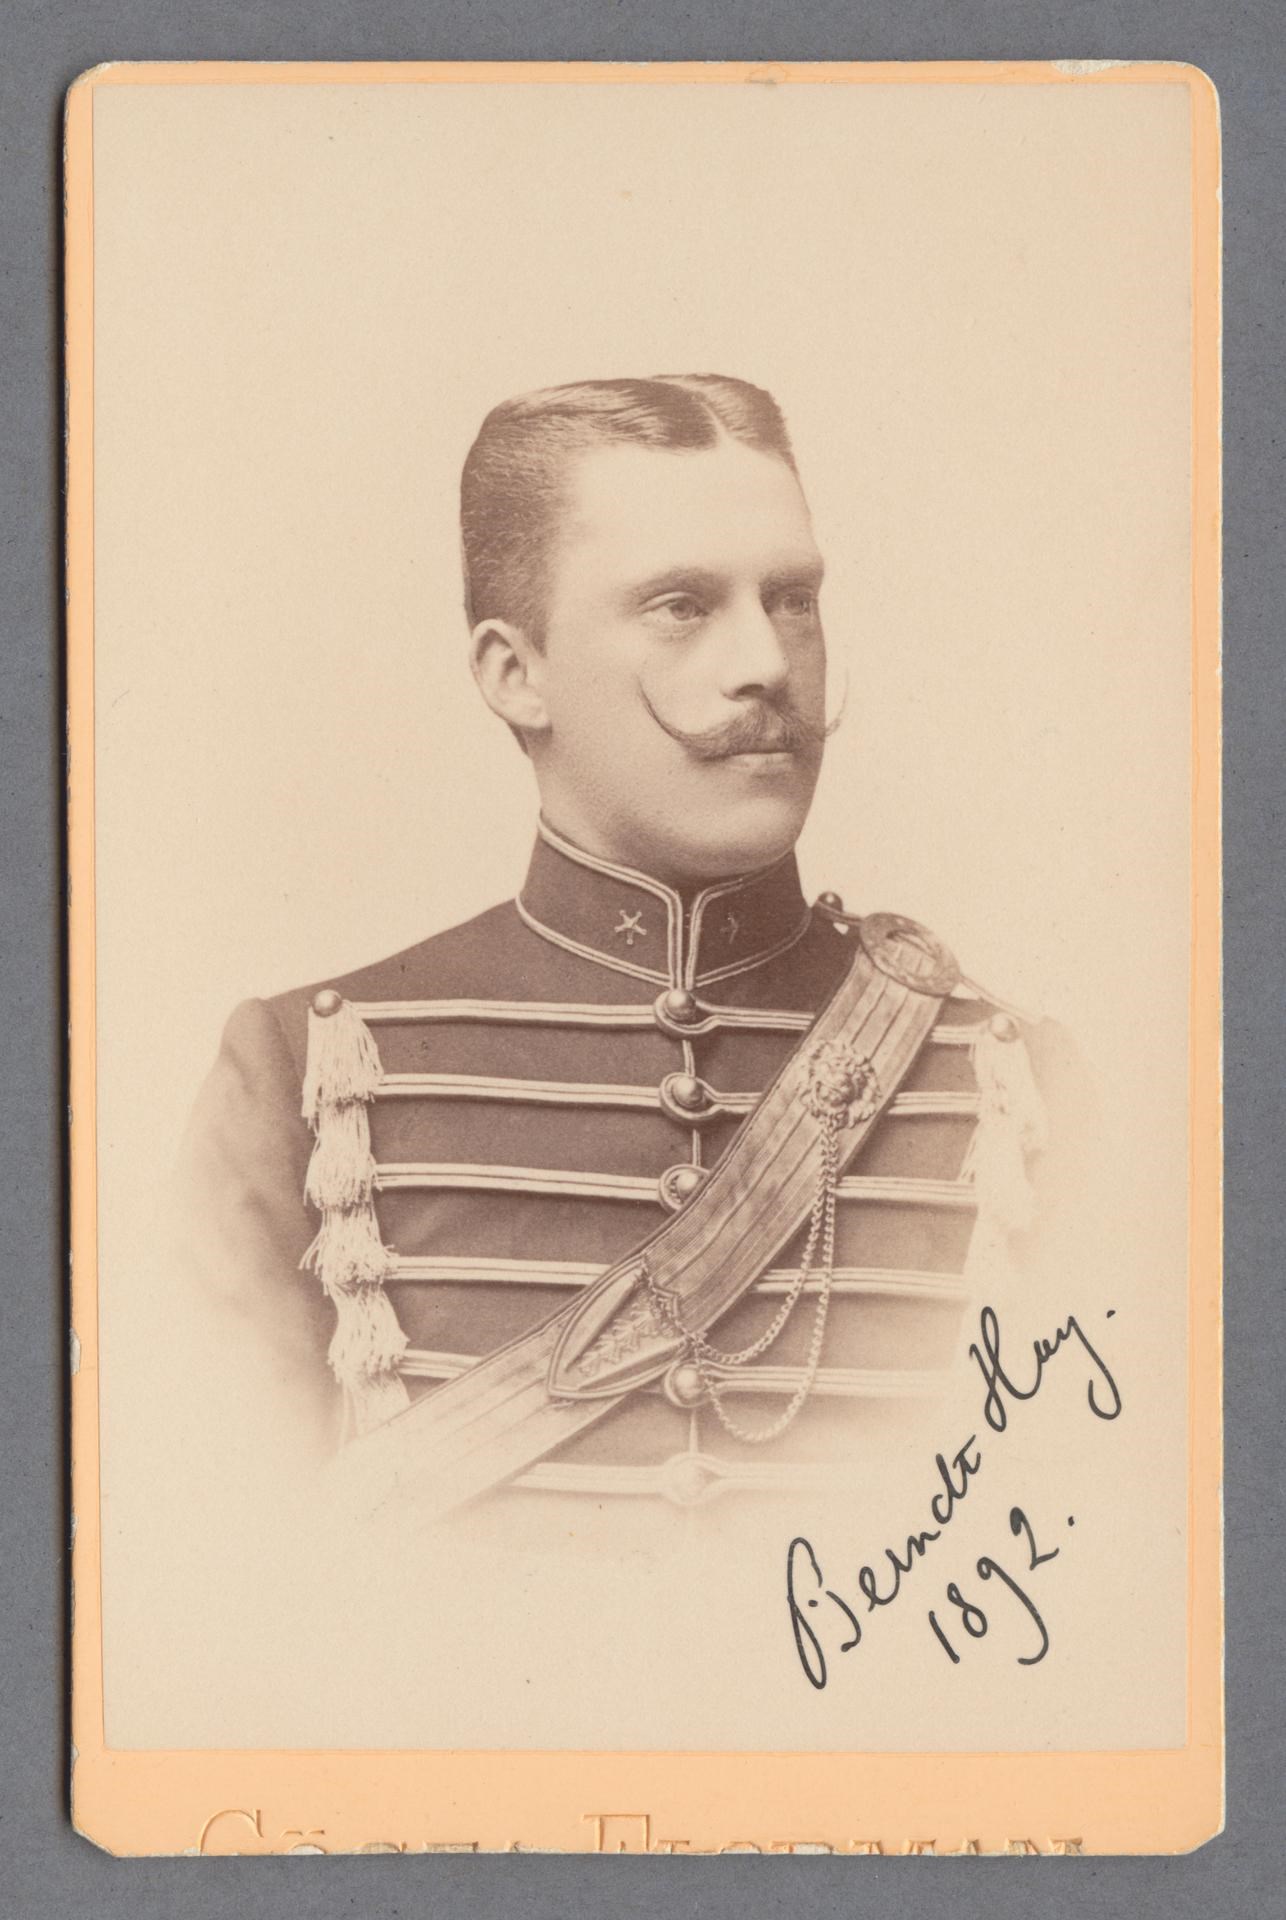 Bystporträtt av Berndt Hay iklädd militäruniform med ordensband på bröstet.